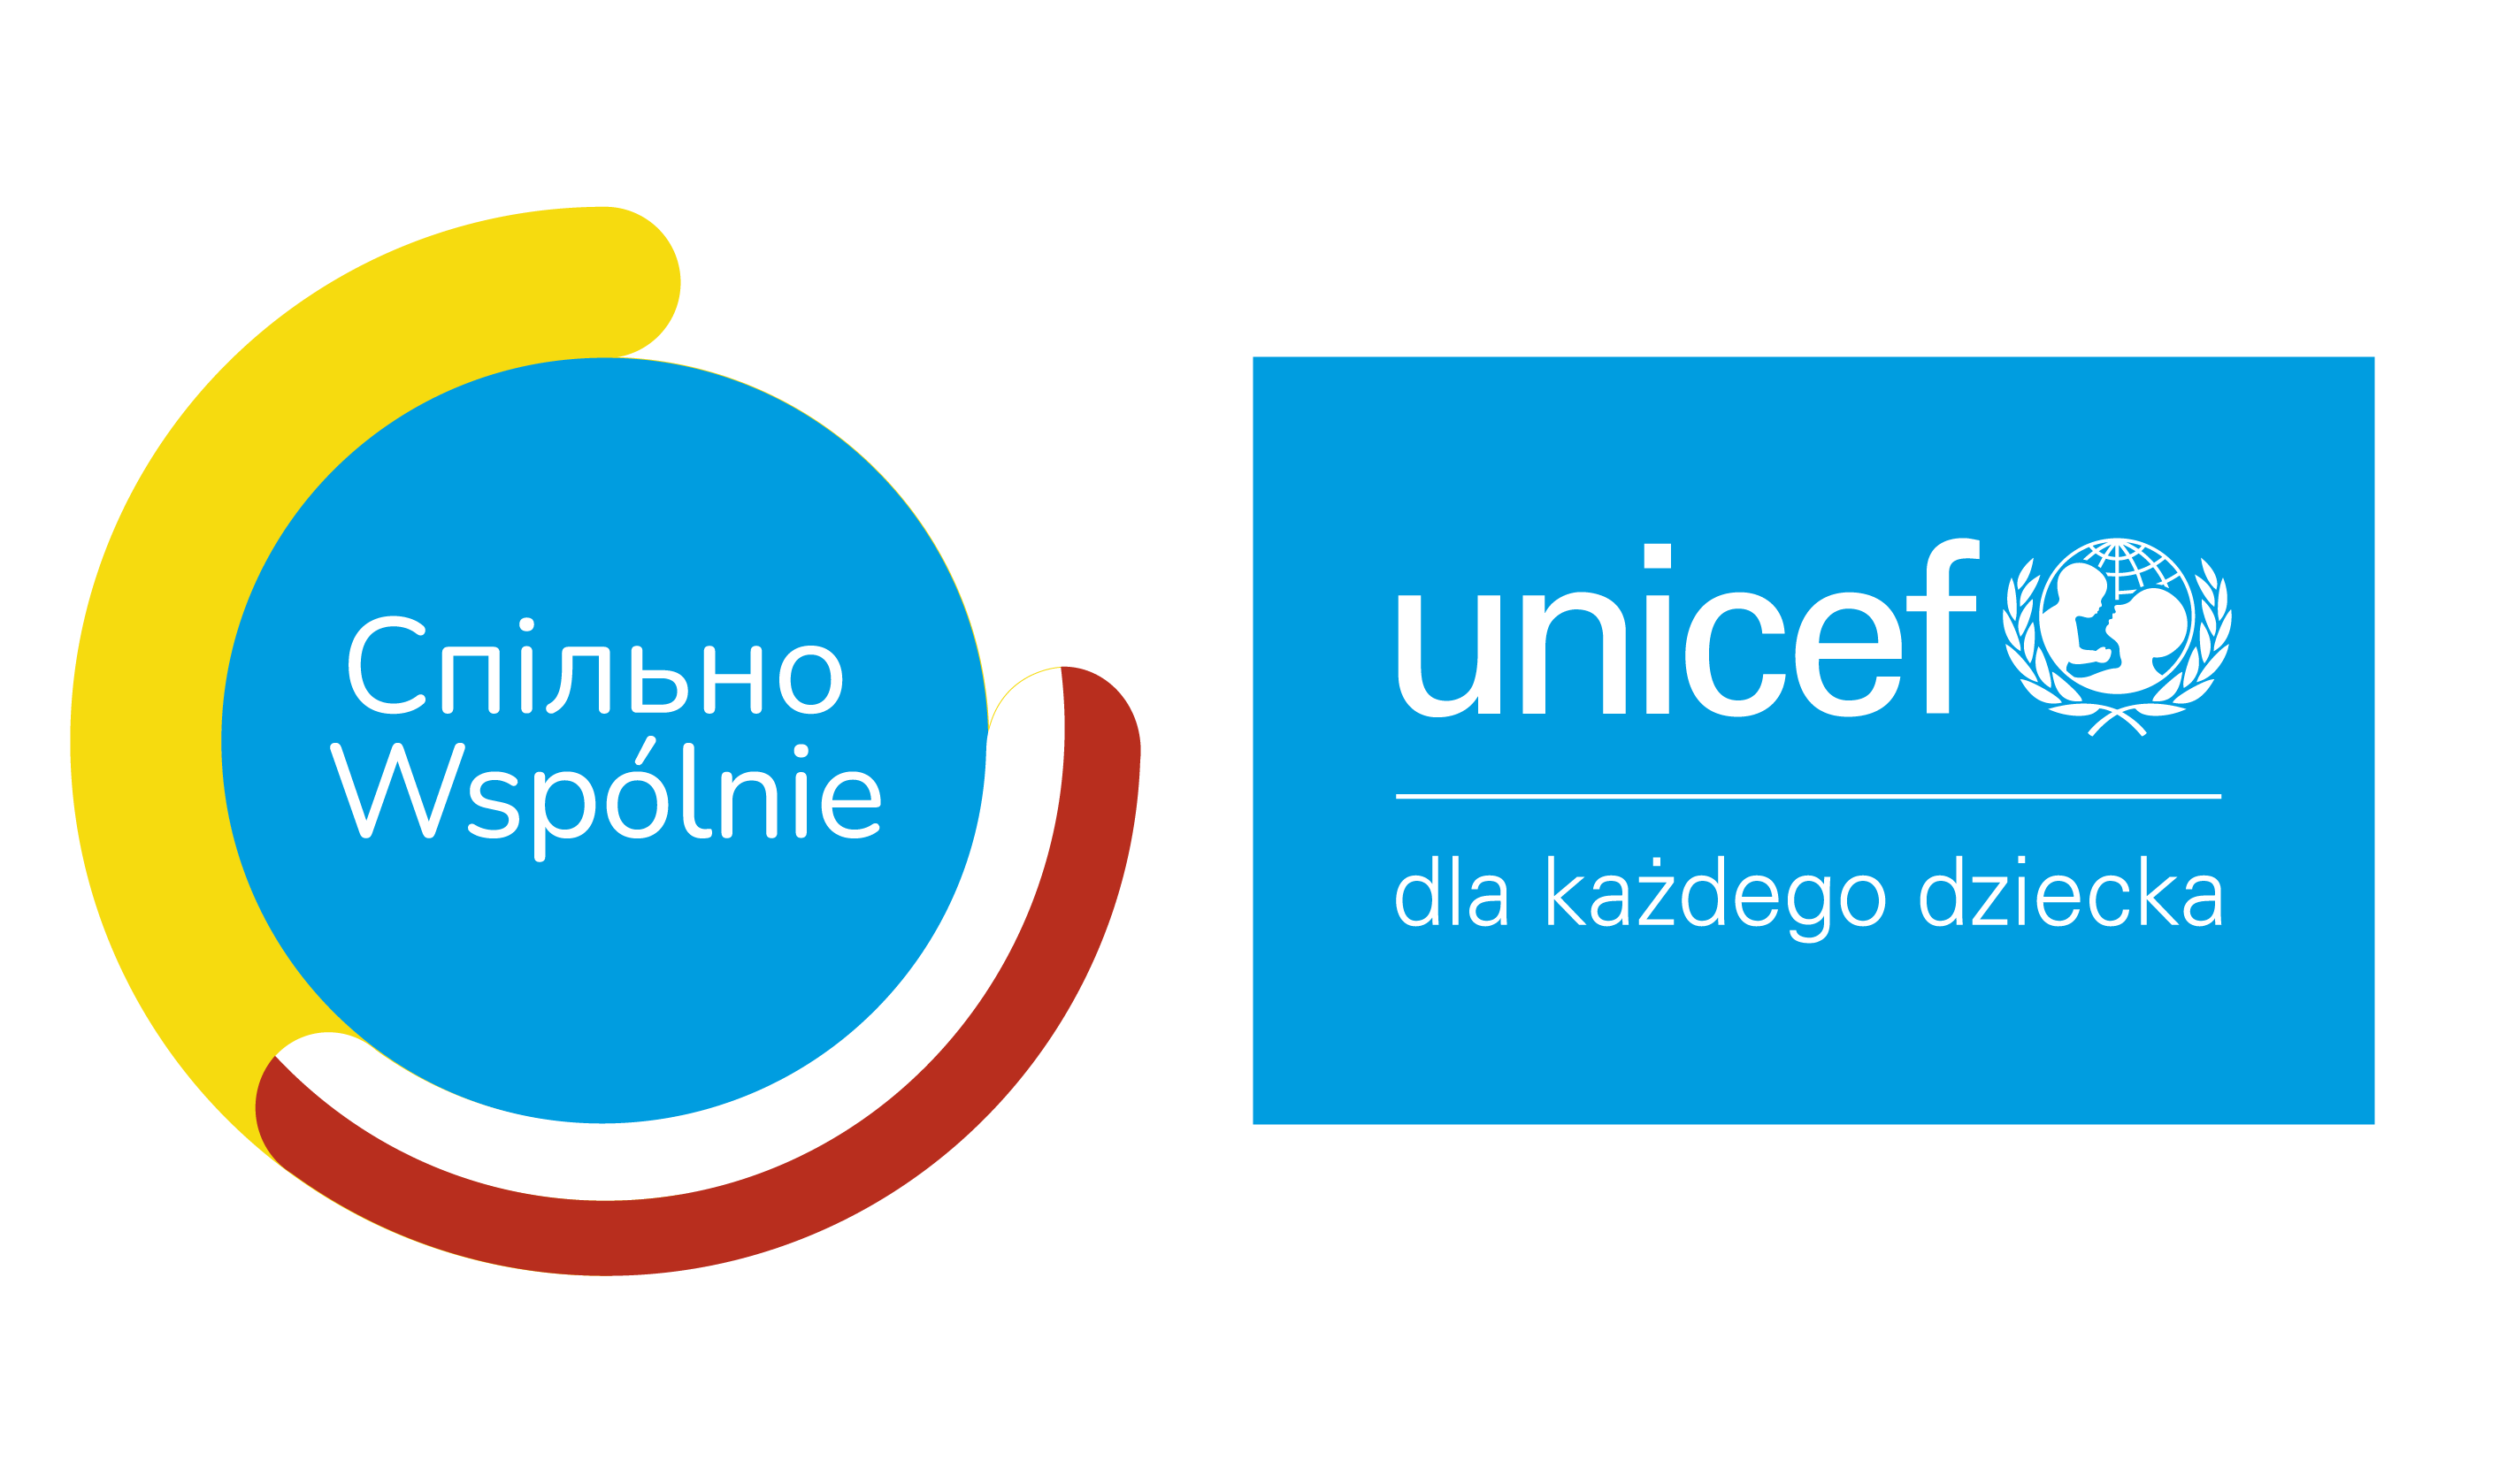 Hub + Unicef